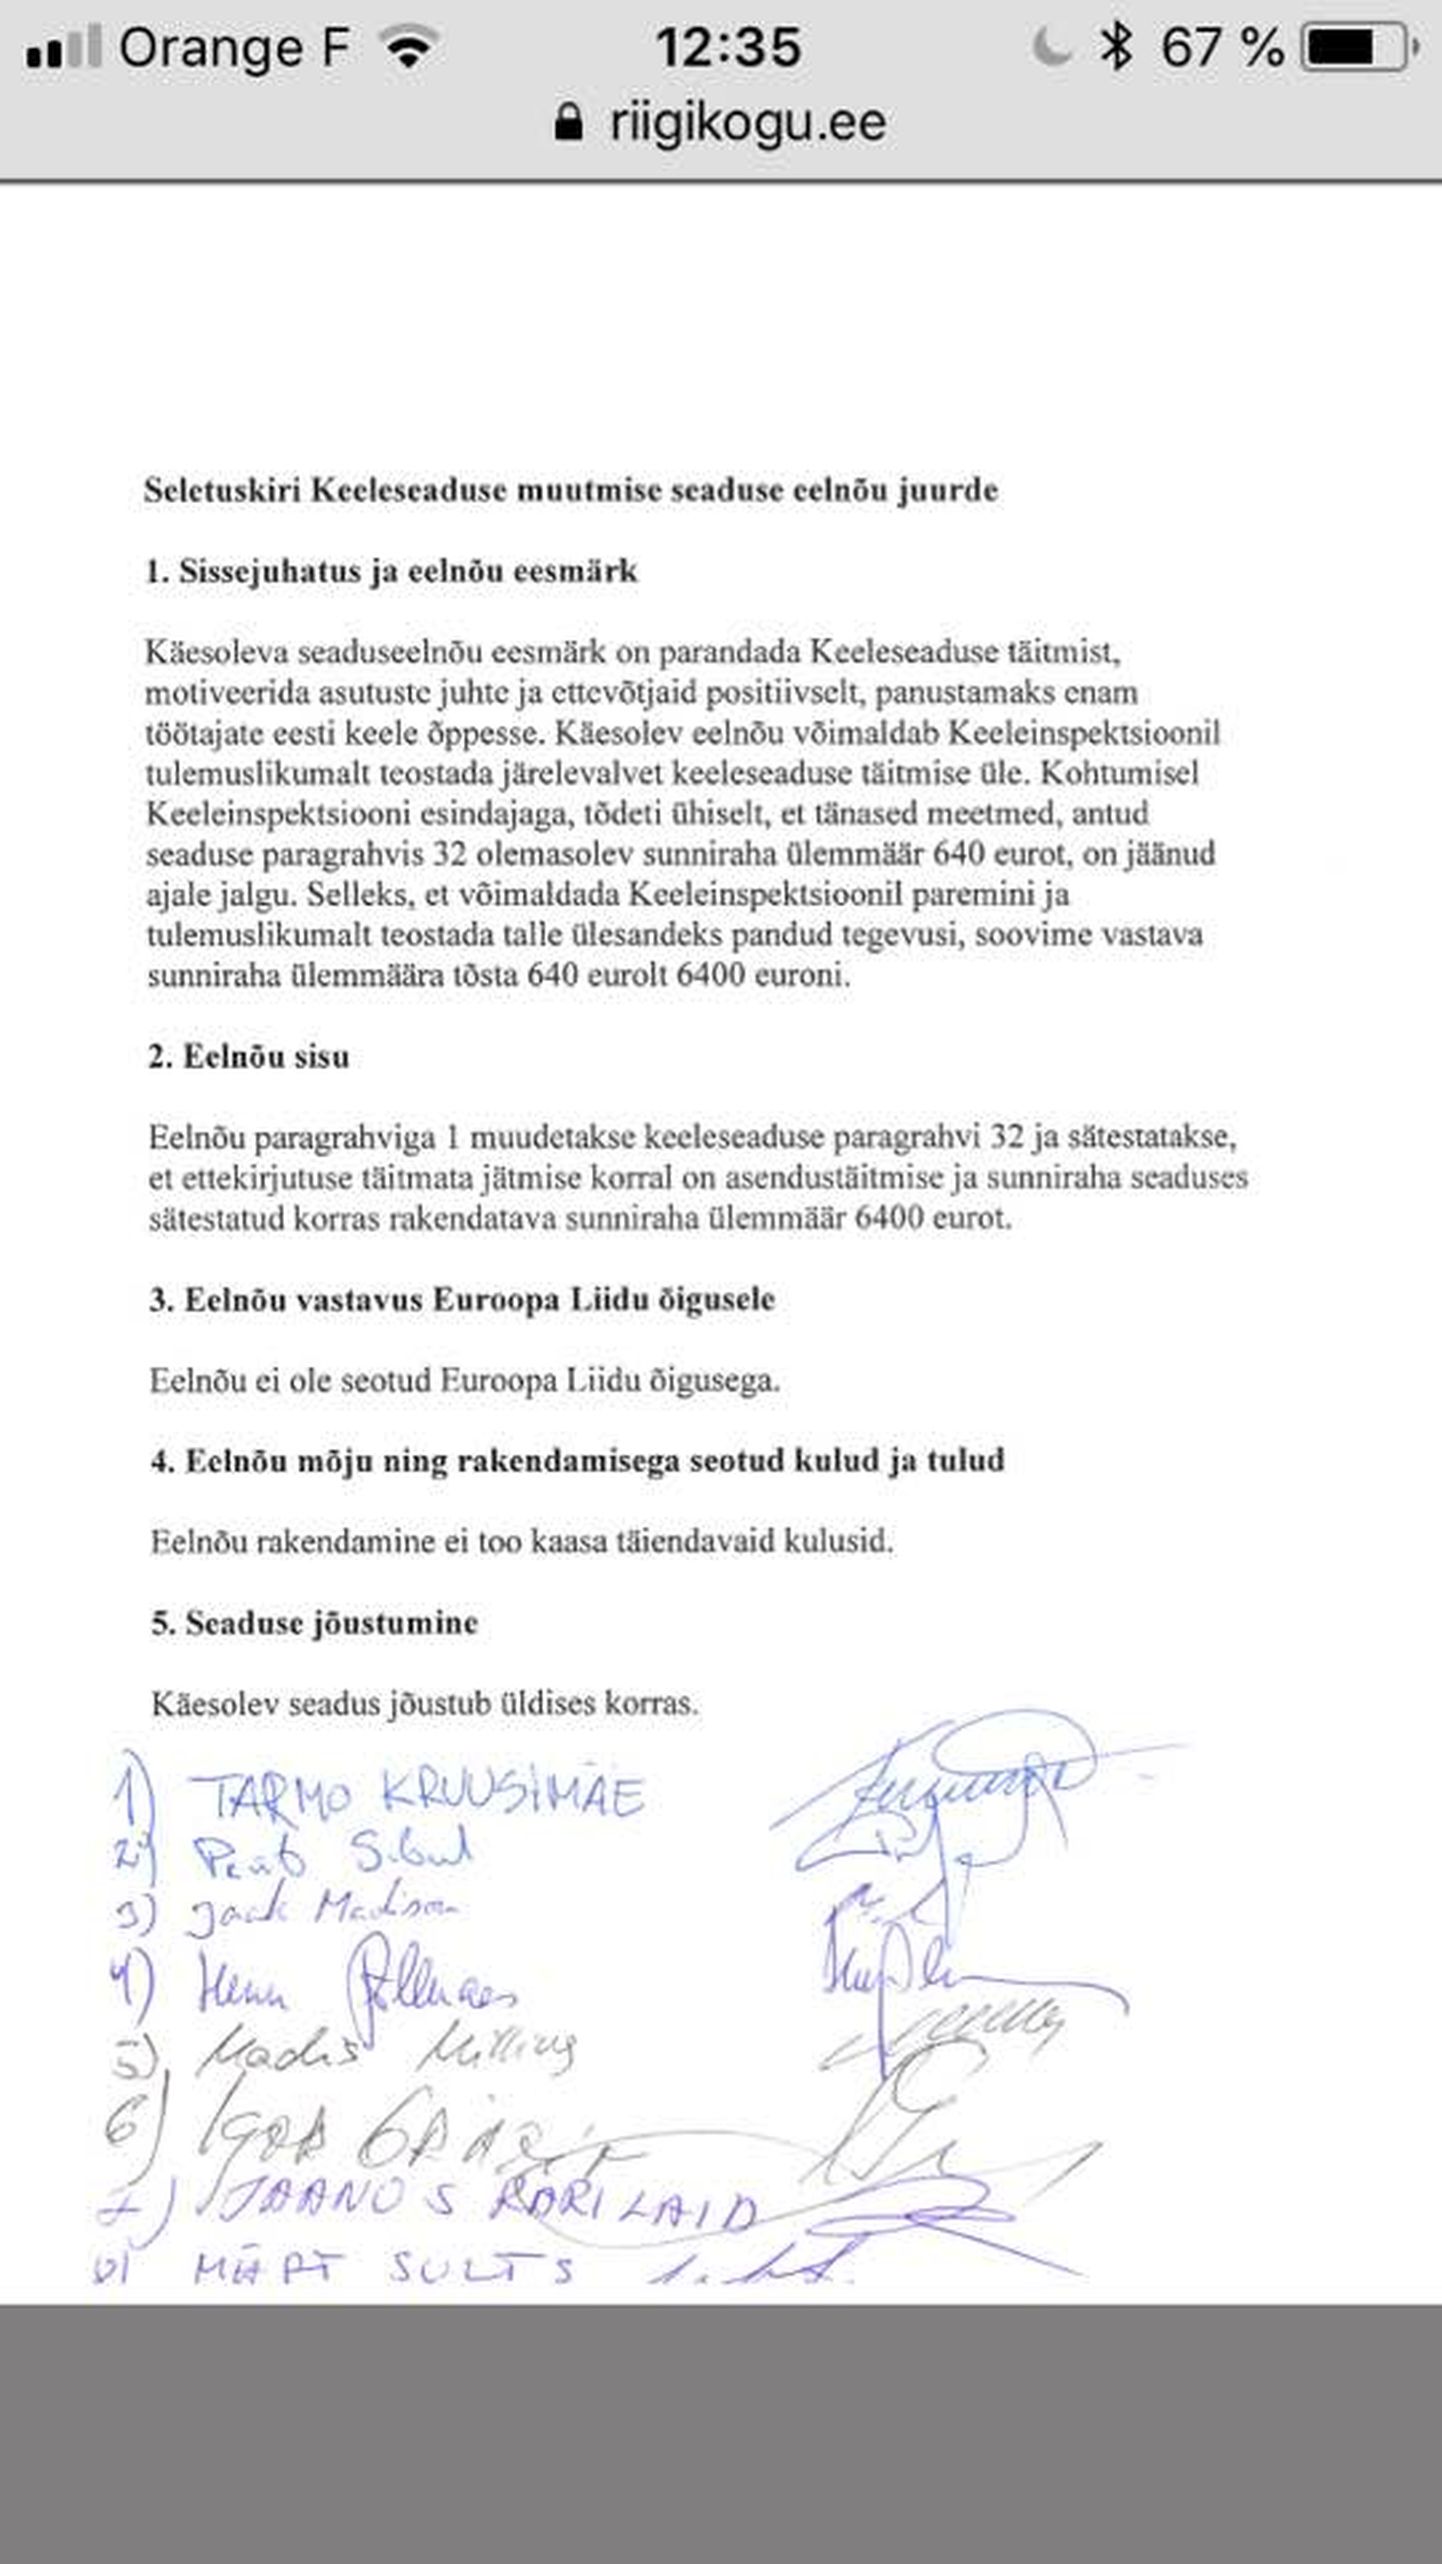 Законопроект с подписями депутатов.